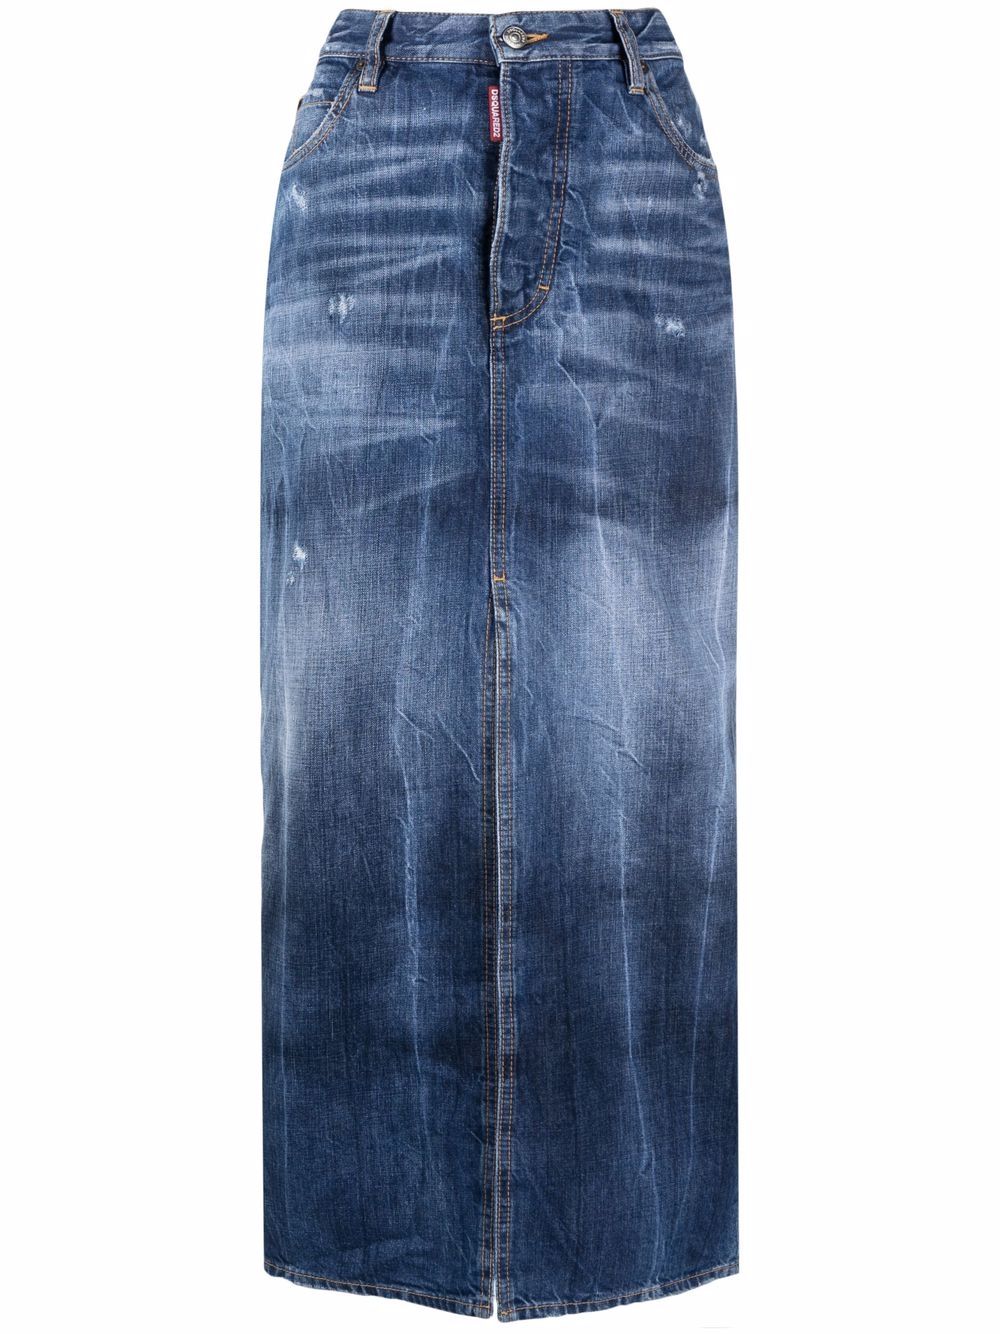 фото Dsquared2 джинсовая юбка с завышенной талией